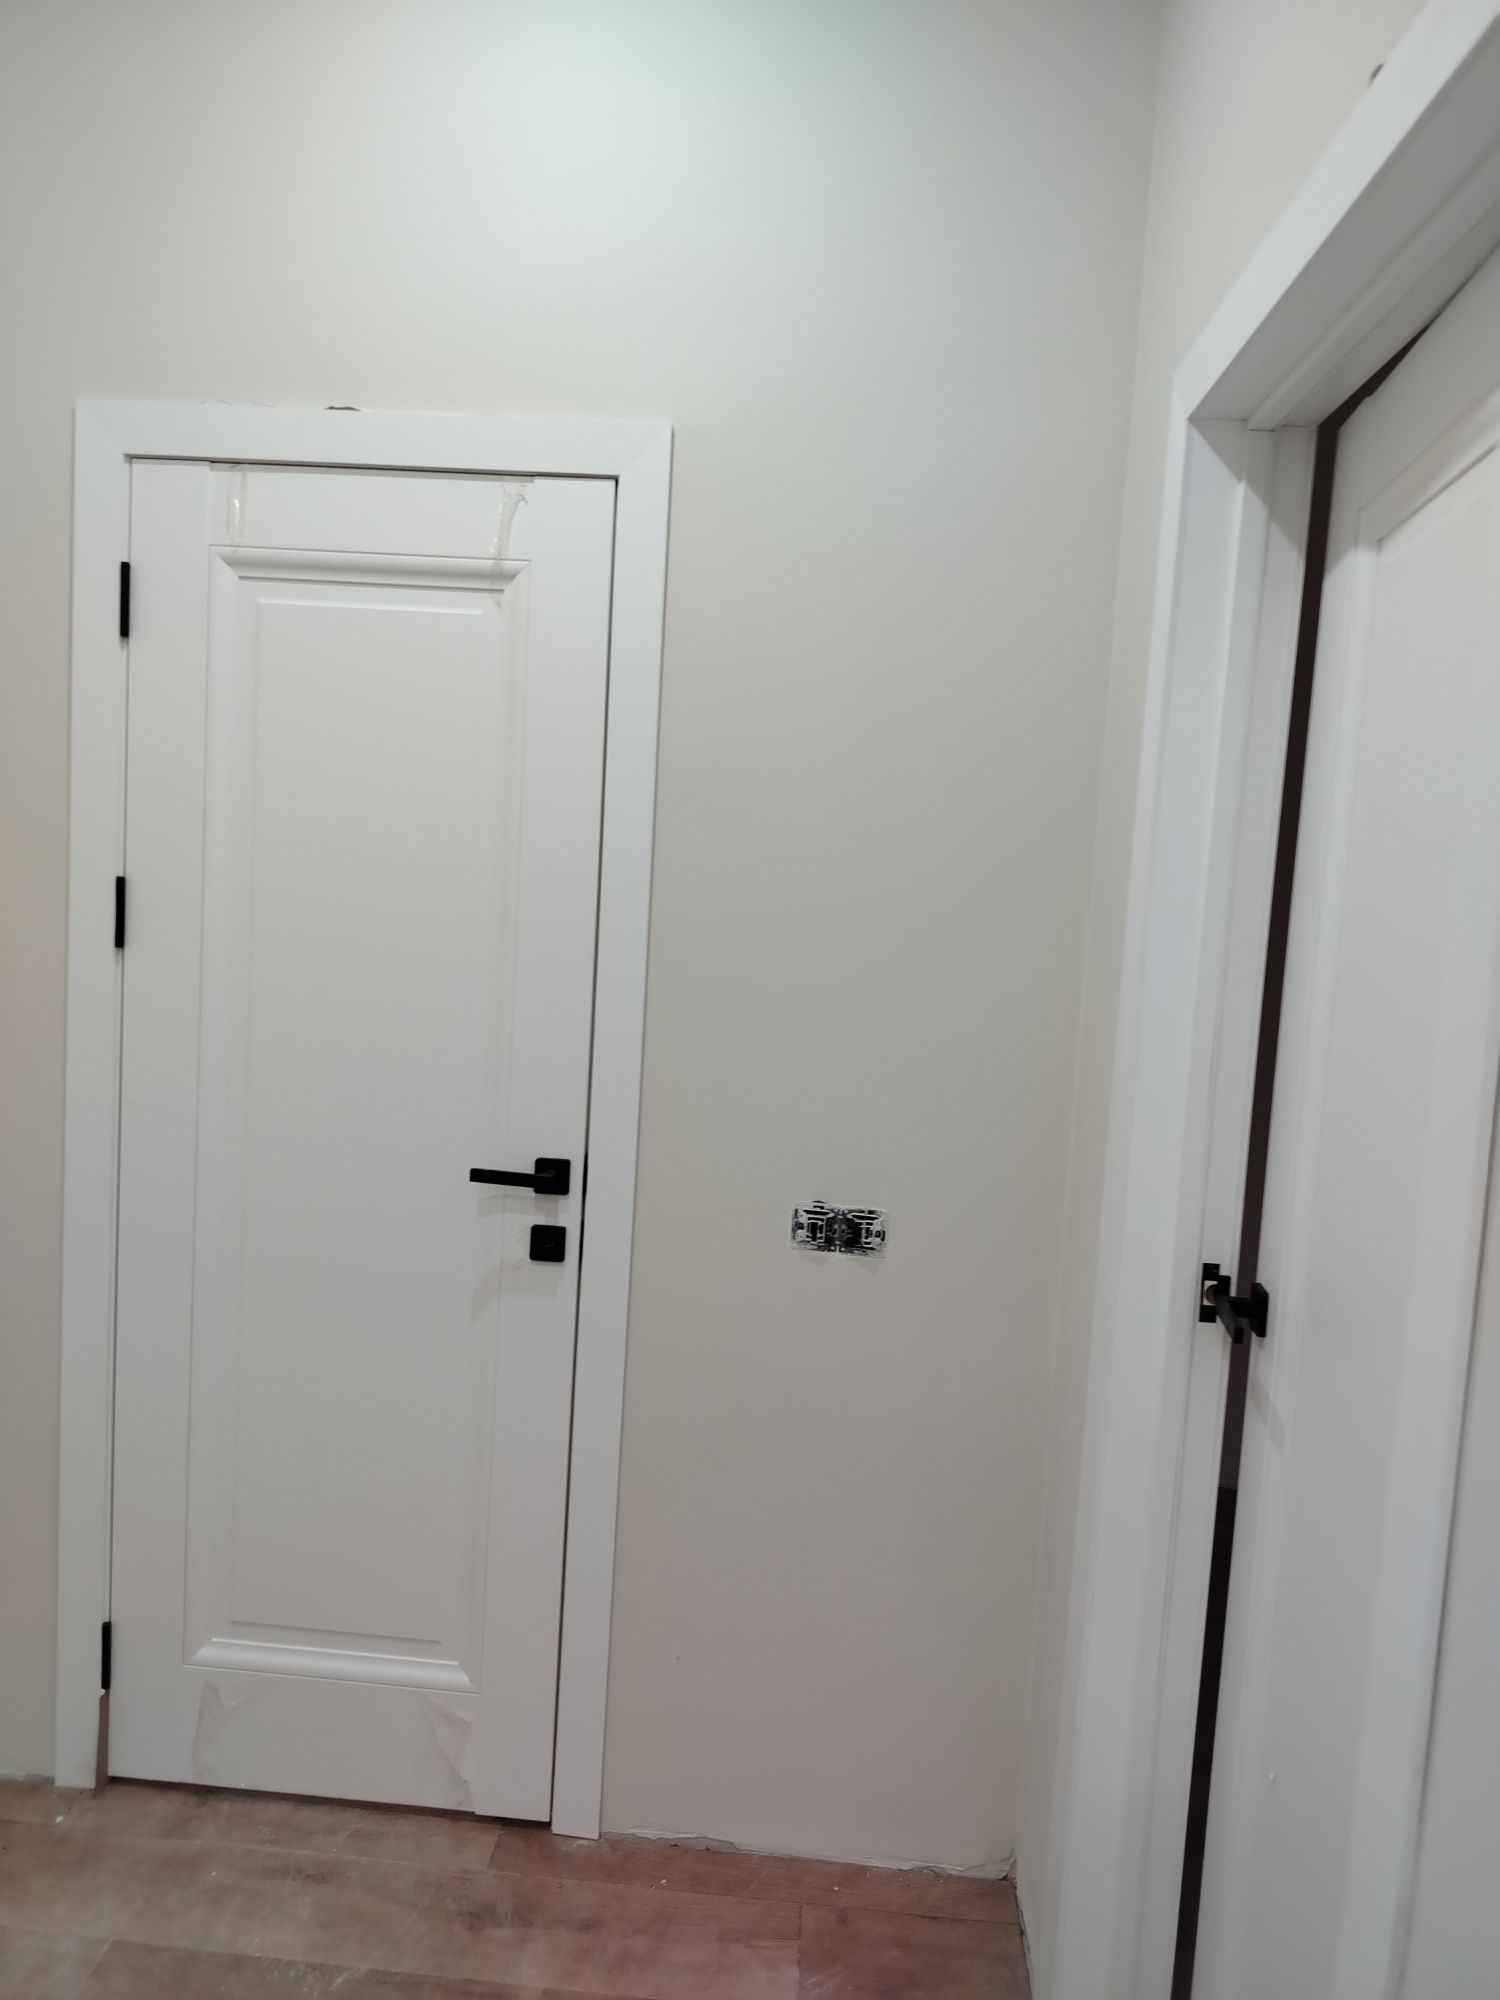 Установка межкомнатных входные дверей  любой сложност ремонт квартир